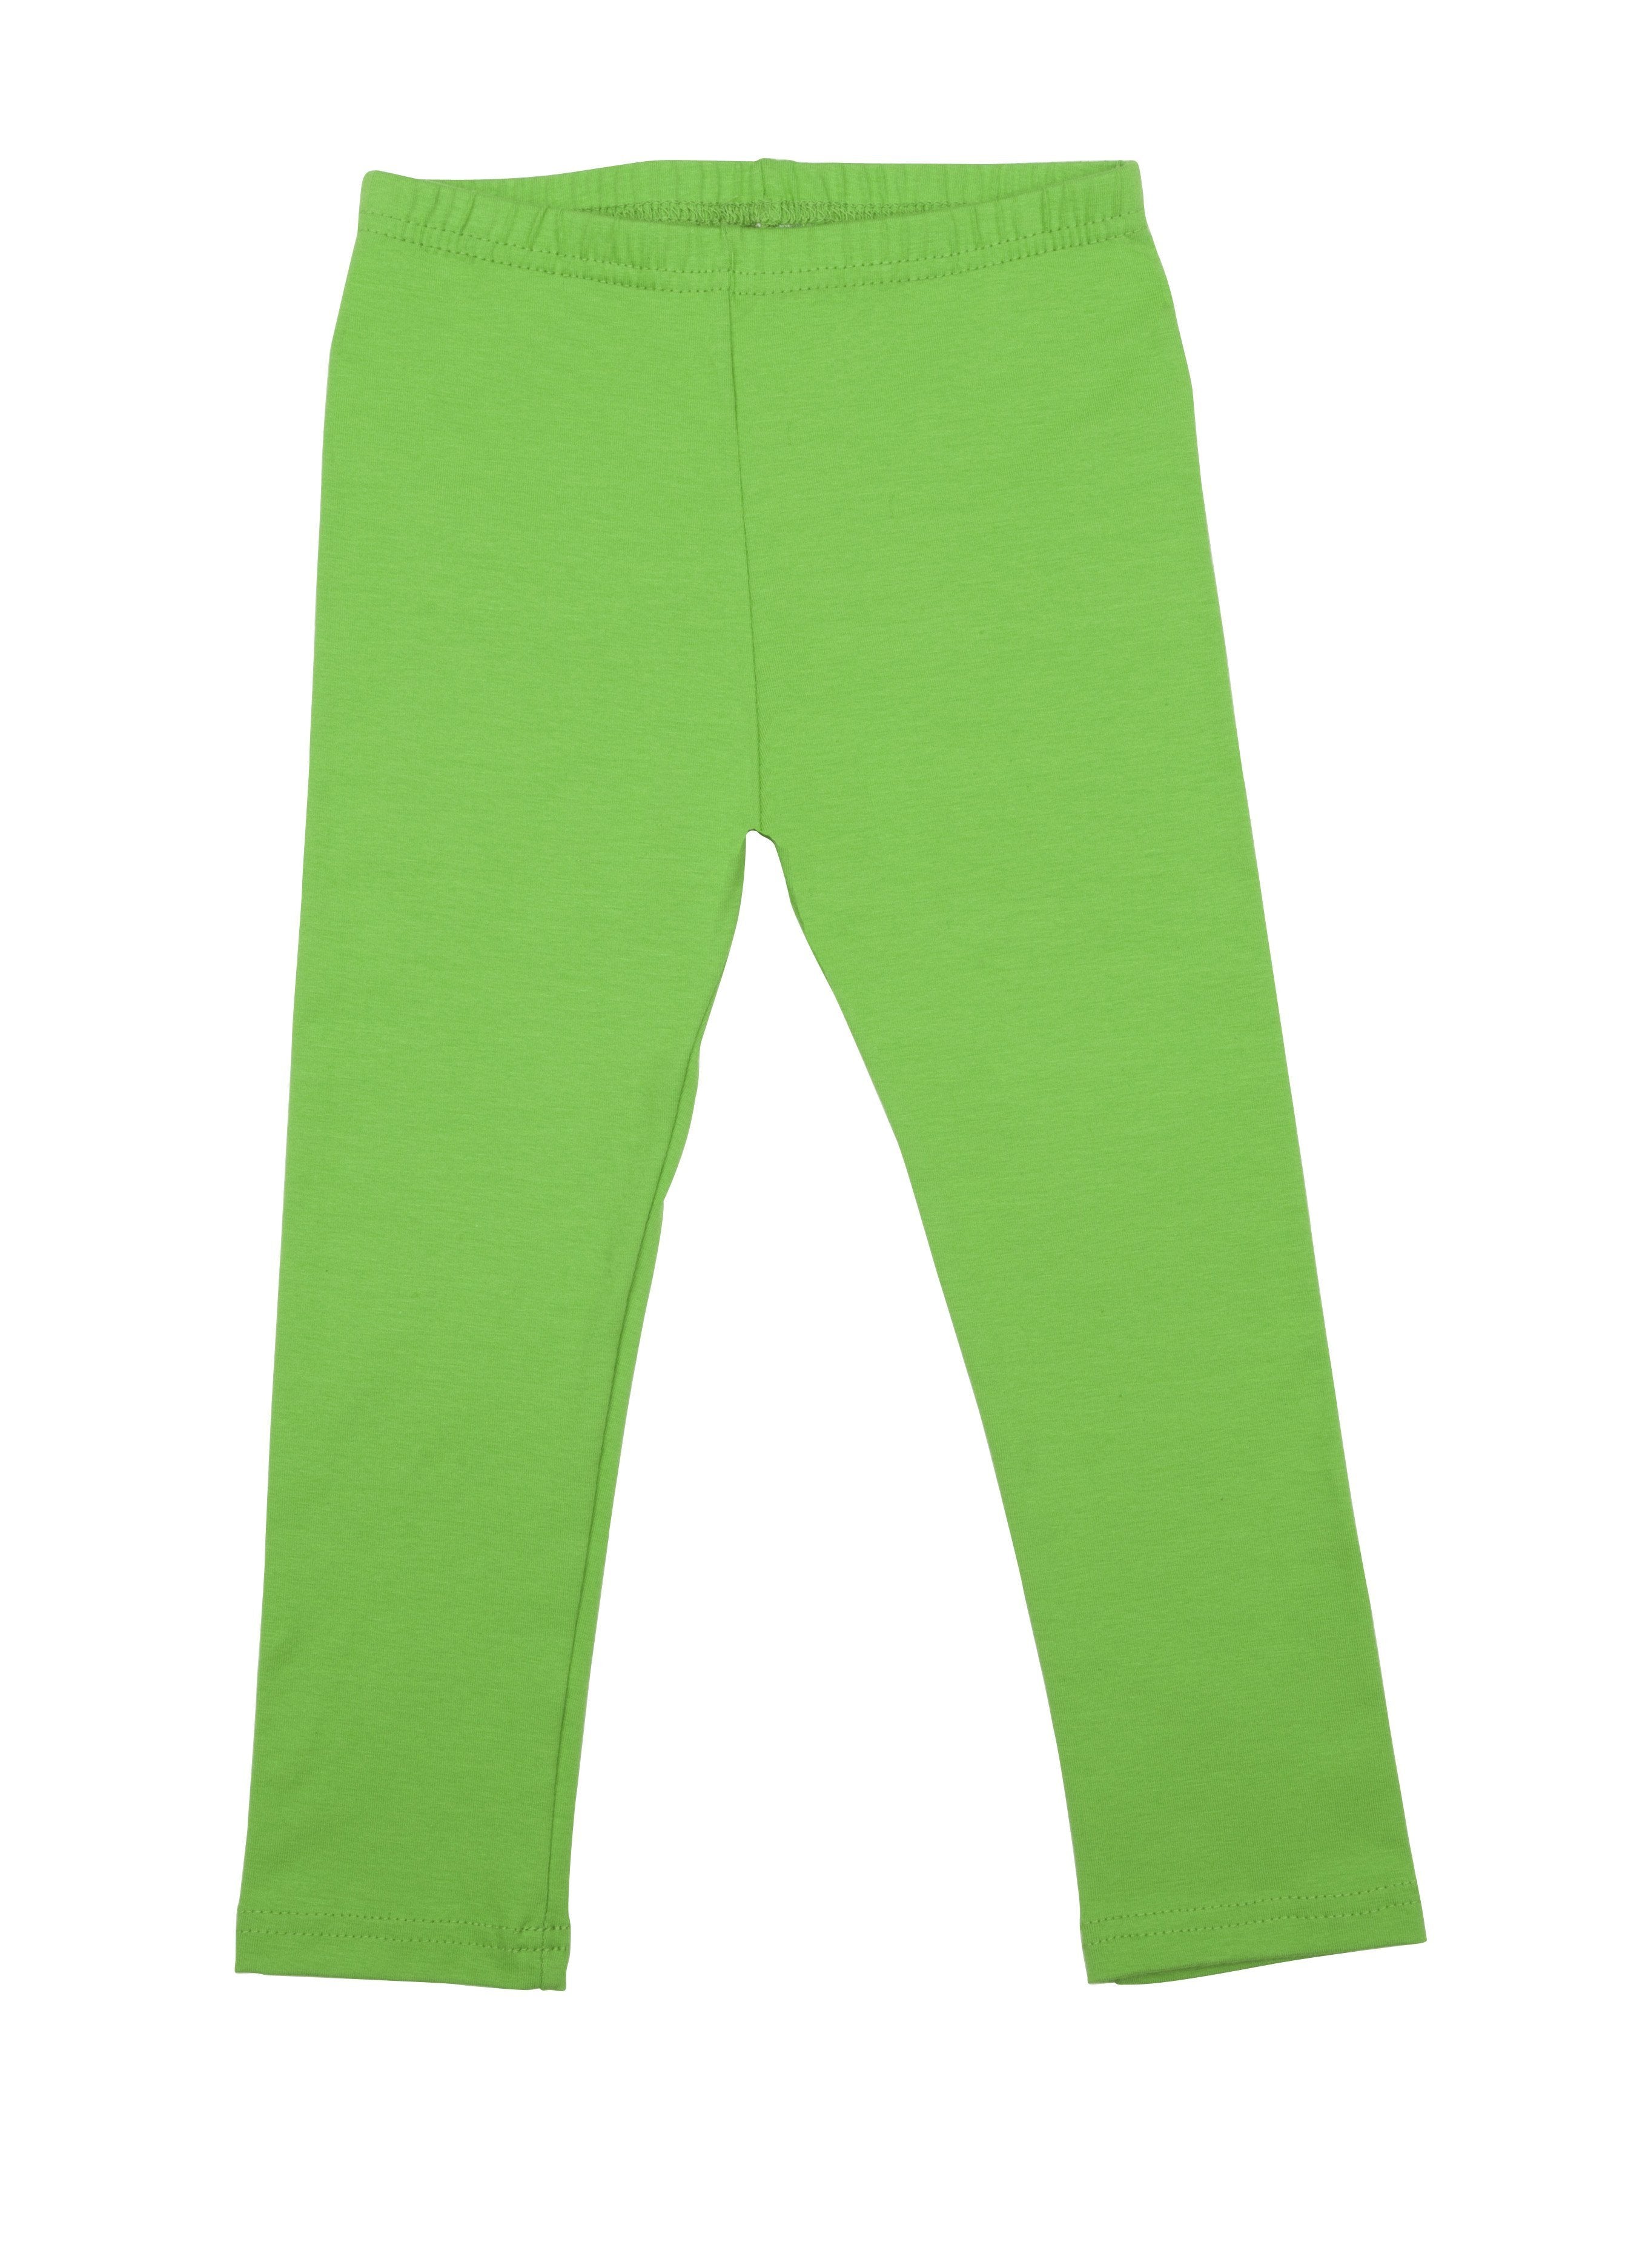 Zenana Long Leggings Cell Phone Pocket Wide Waist Band Cotton Yoga Pants  S-XL - Etsy